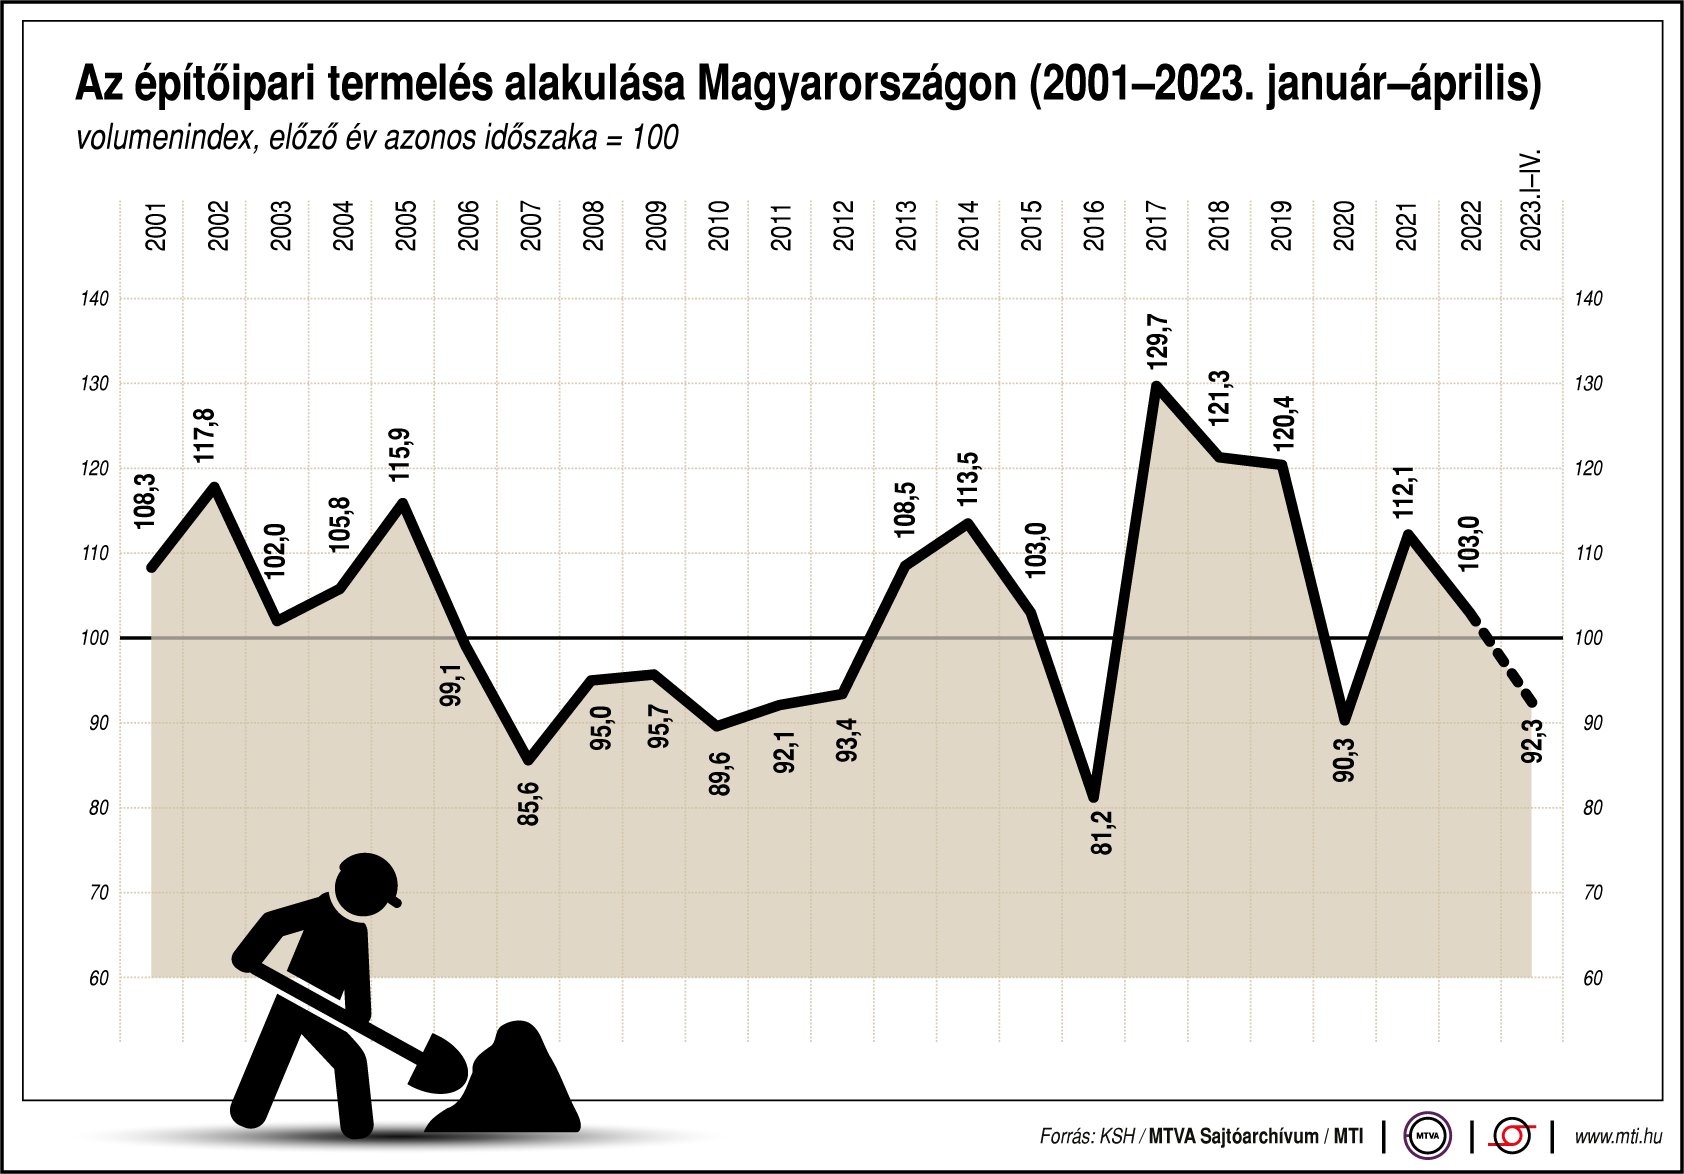 Az építőipari termelés alakulása Magyarországon (2001-2023. január-április)